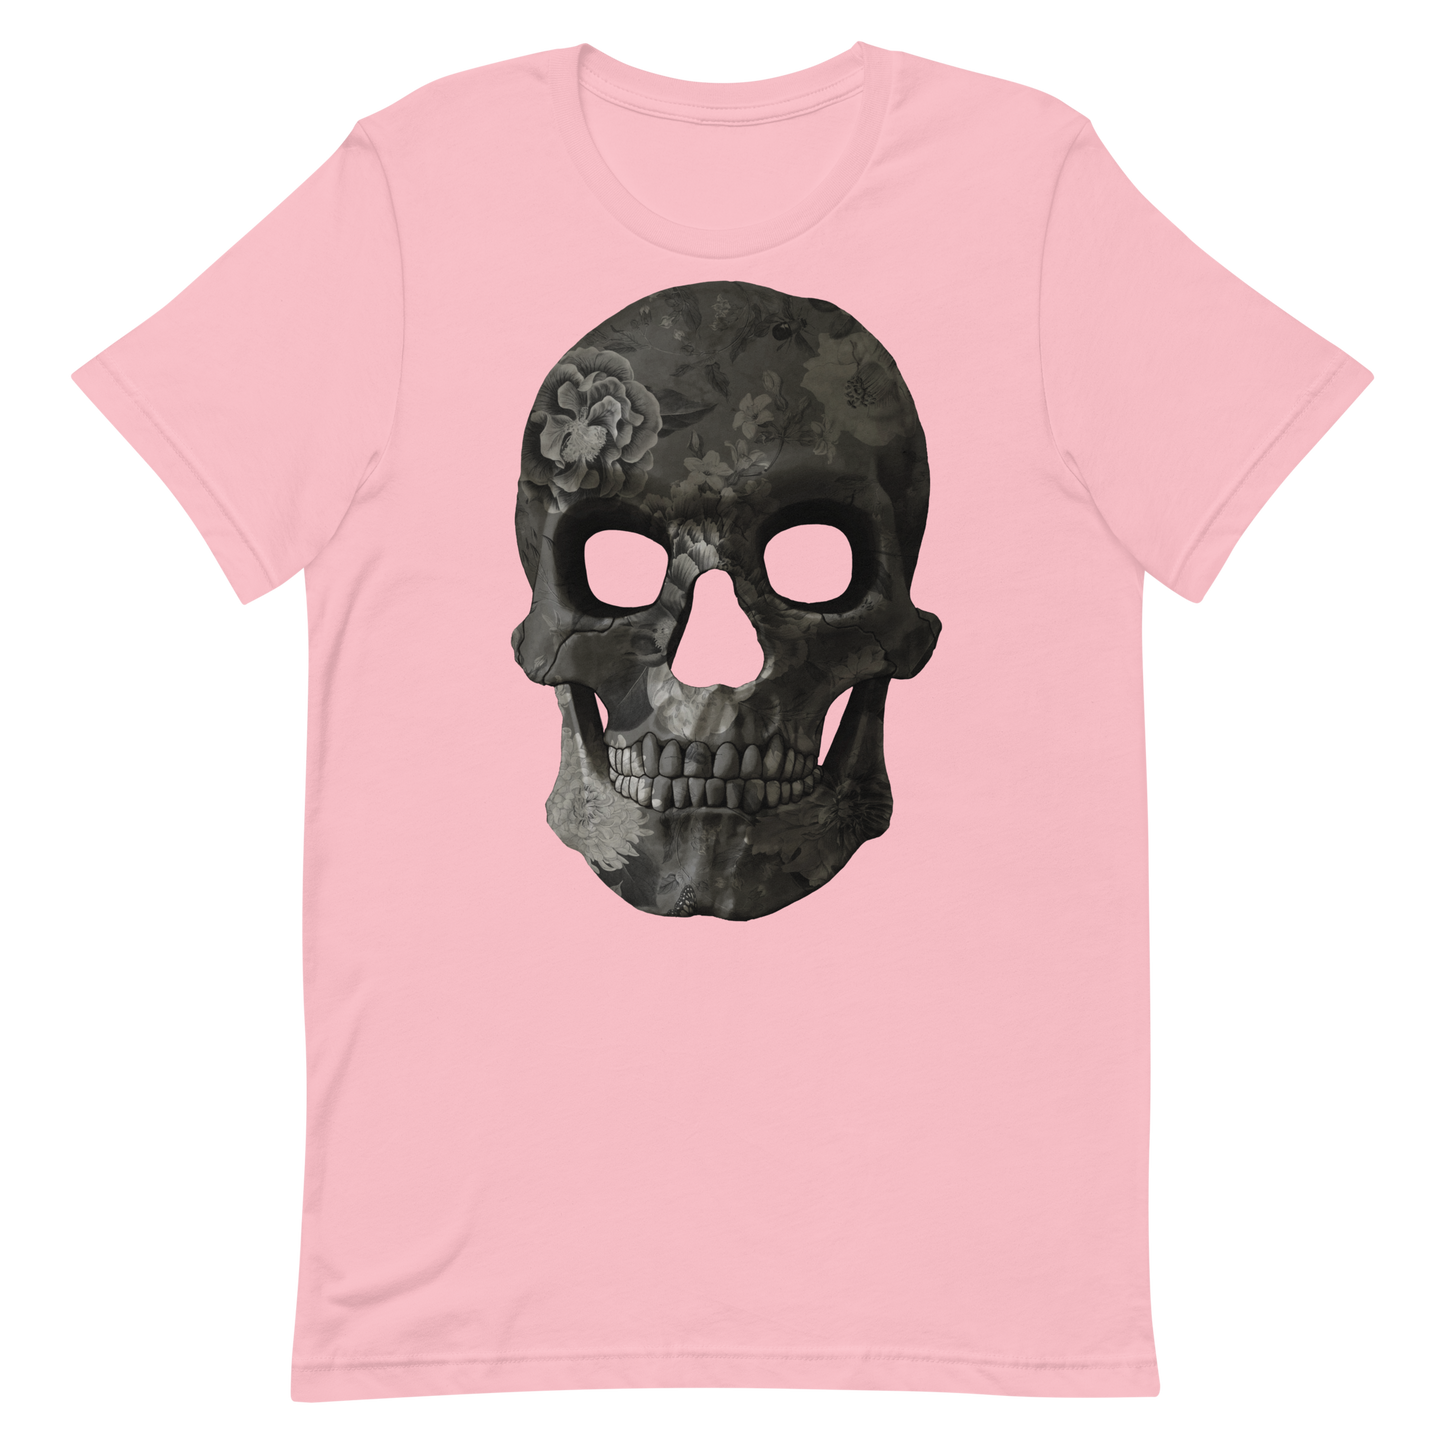 The Flower Skull motorcycle t-shirt 033